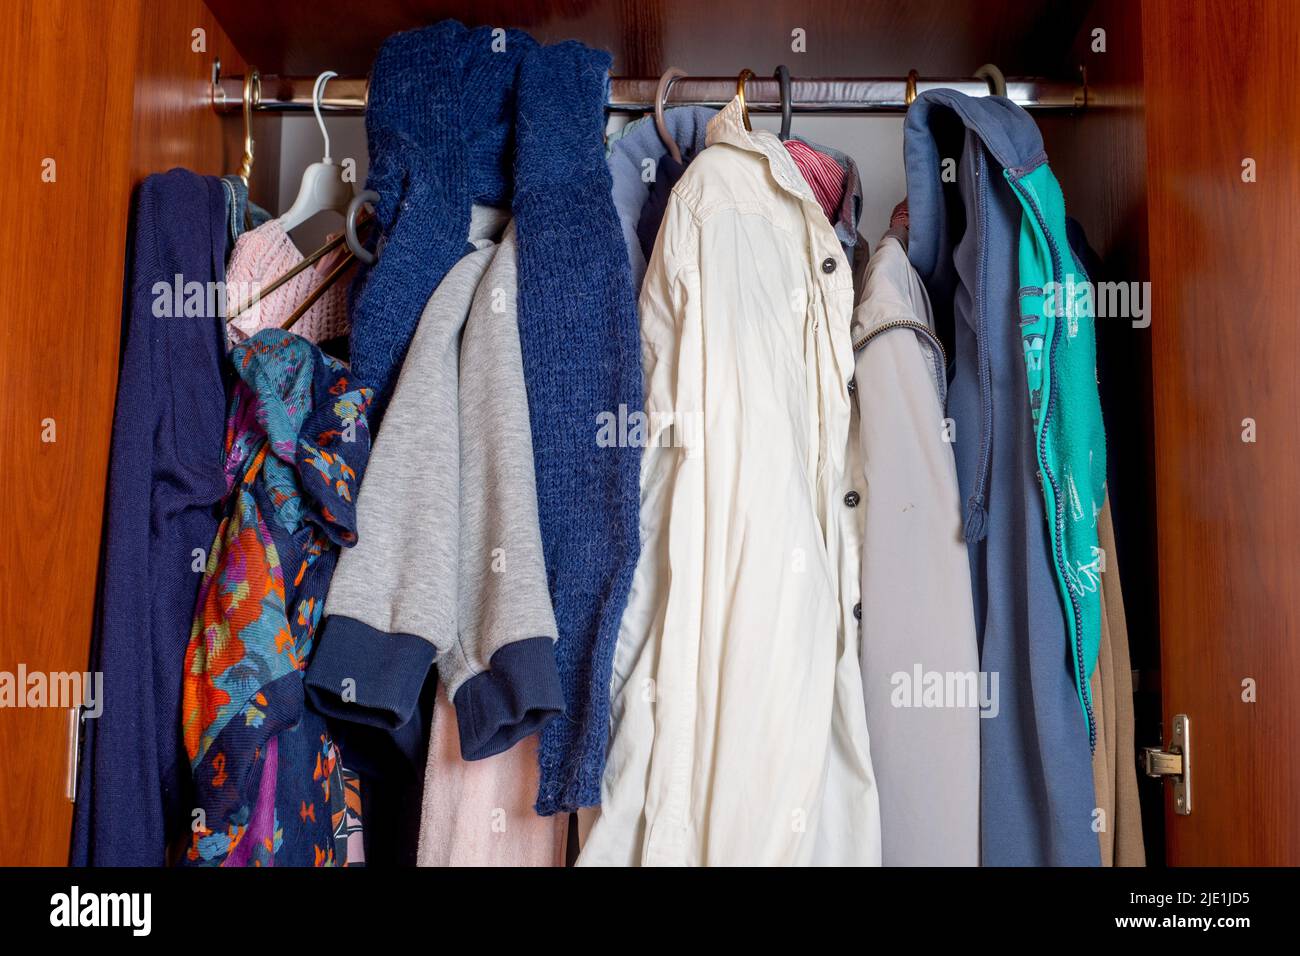 armadio aperto con vestiti su appendiabiti e disordine in cassetti